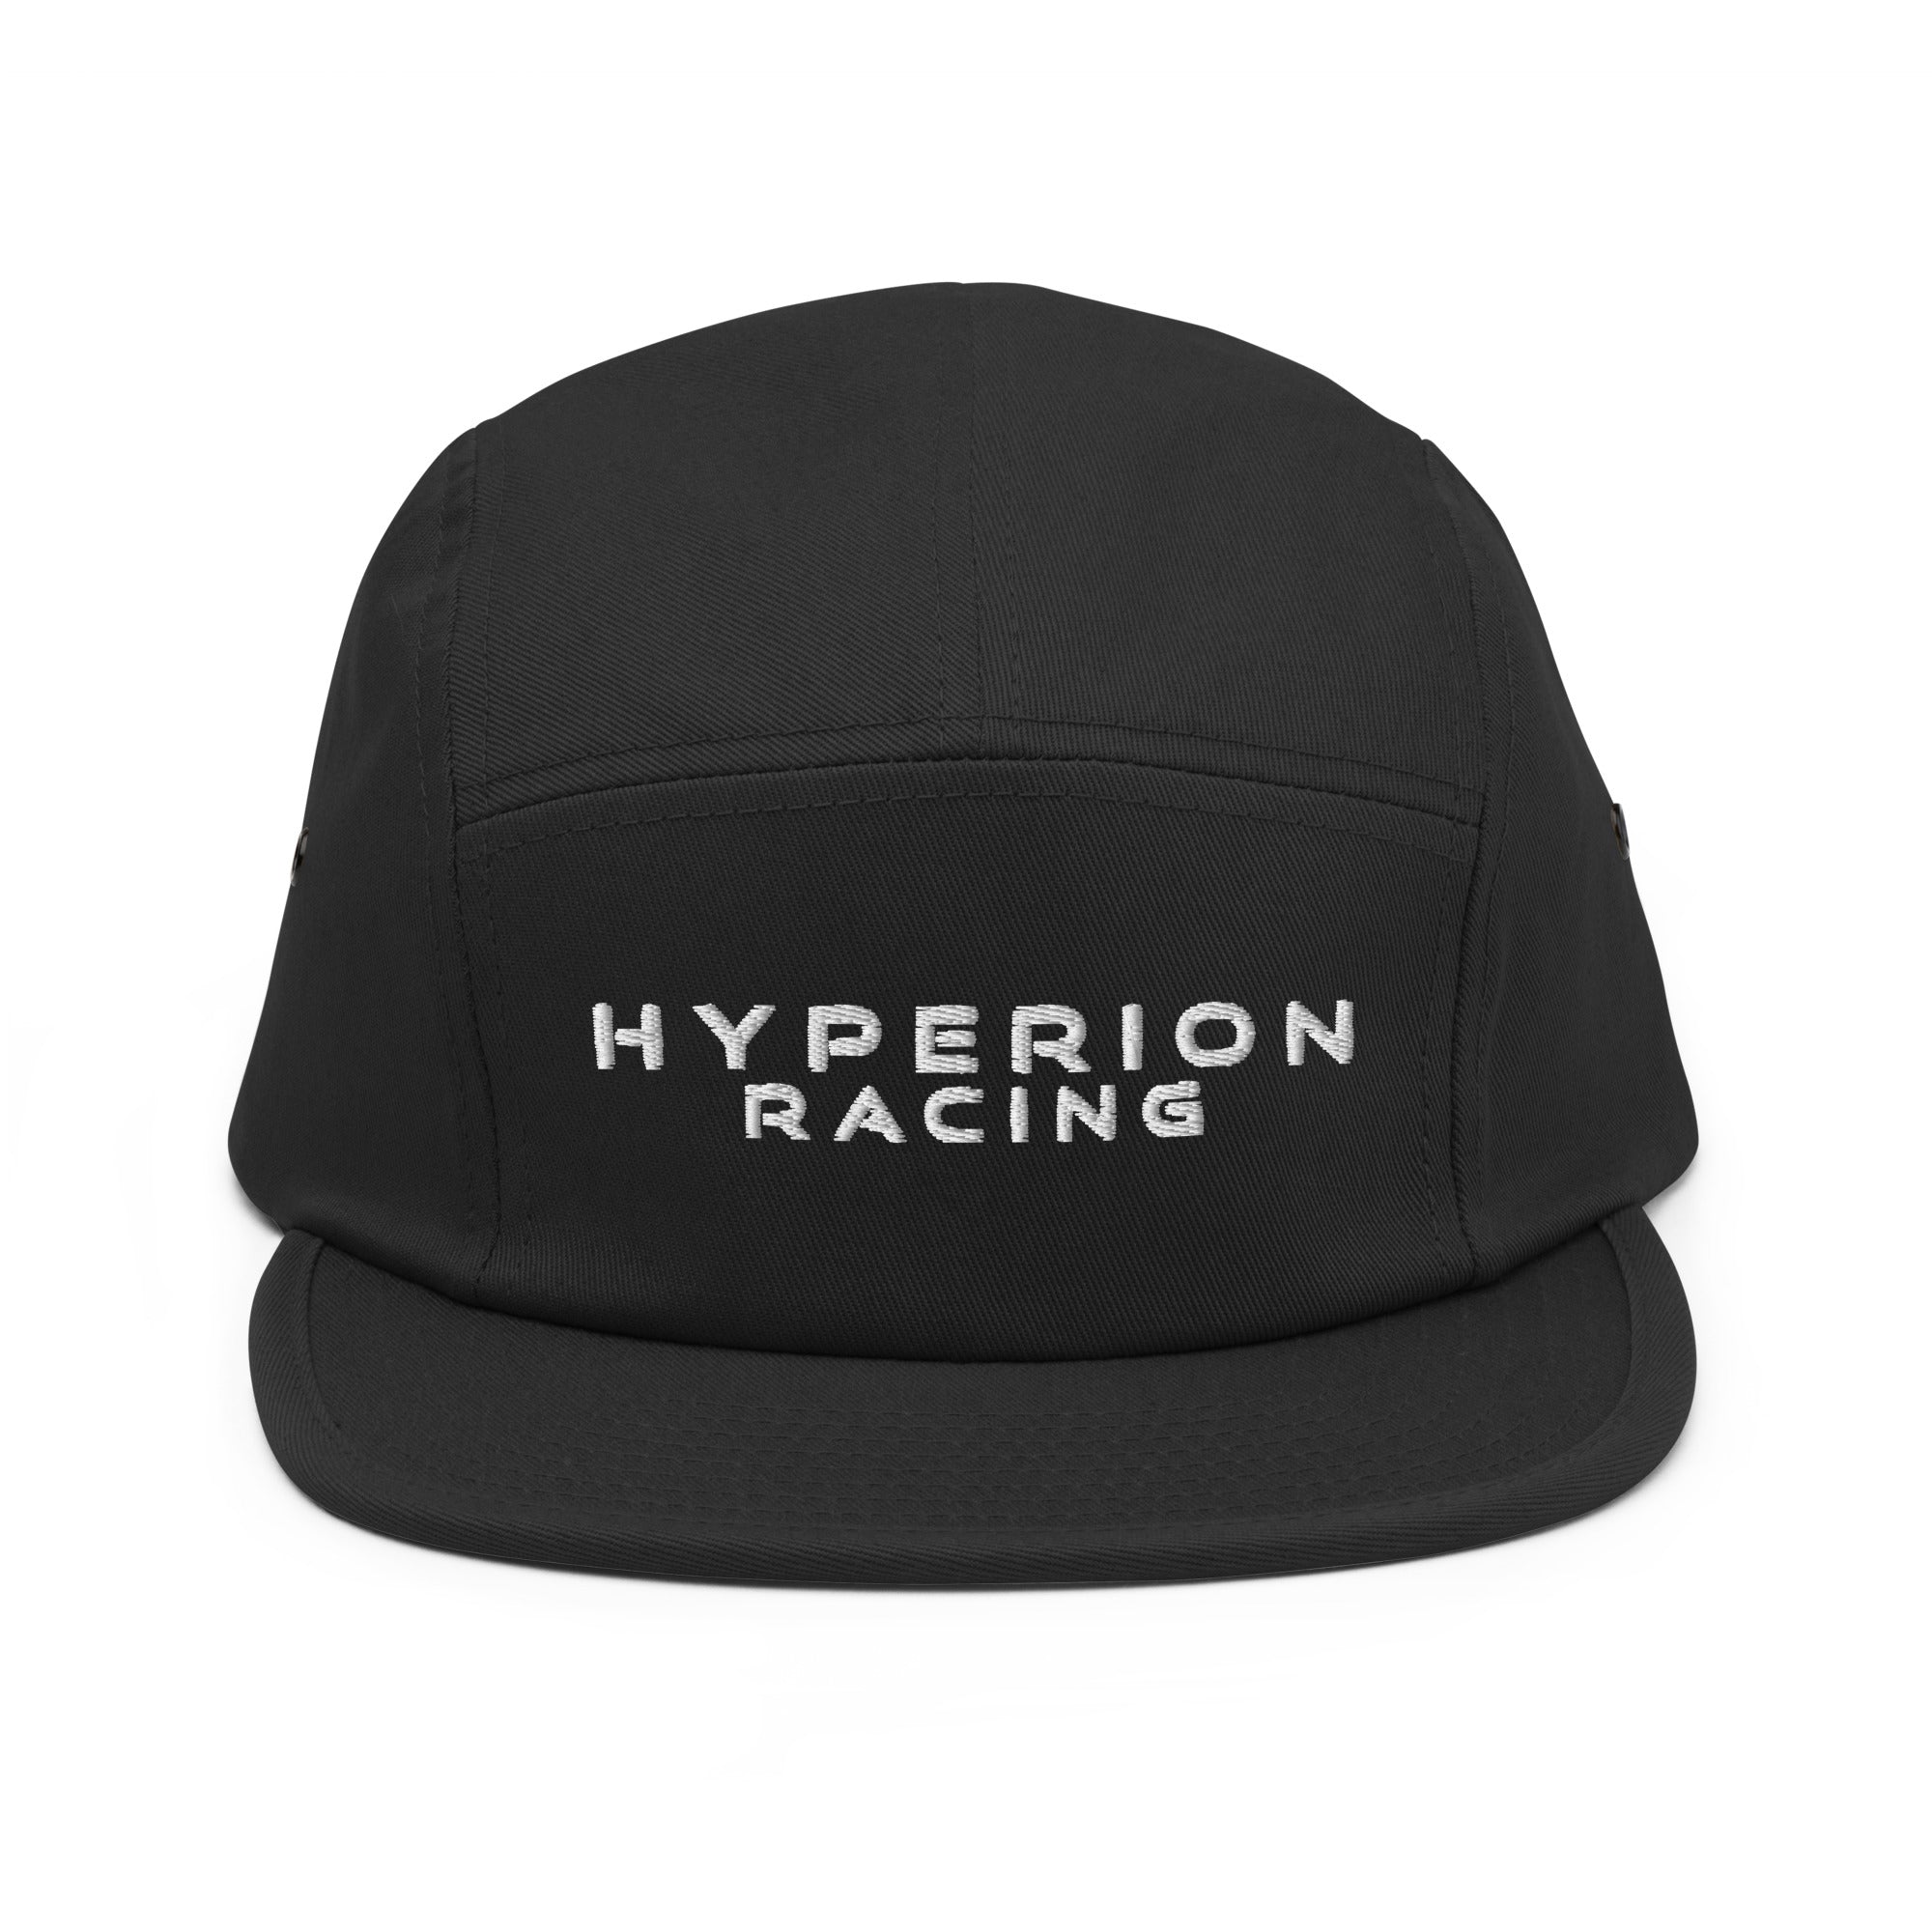 Hyperion Racing Five Panel Cap